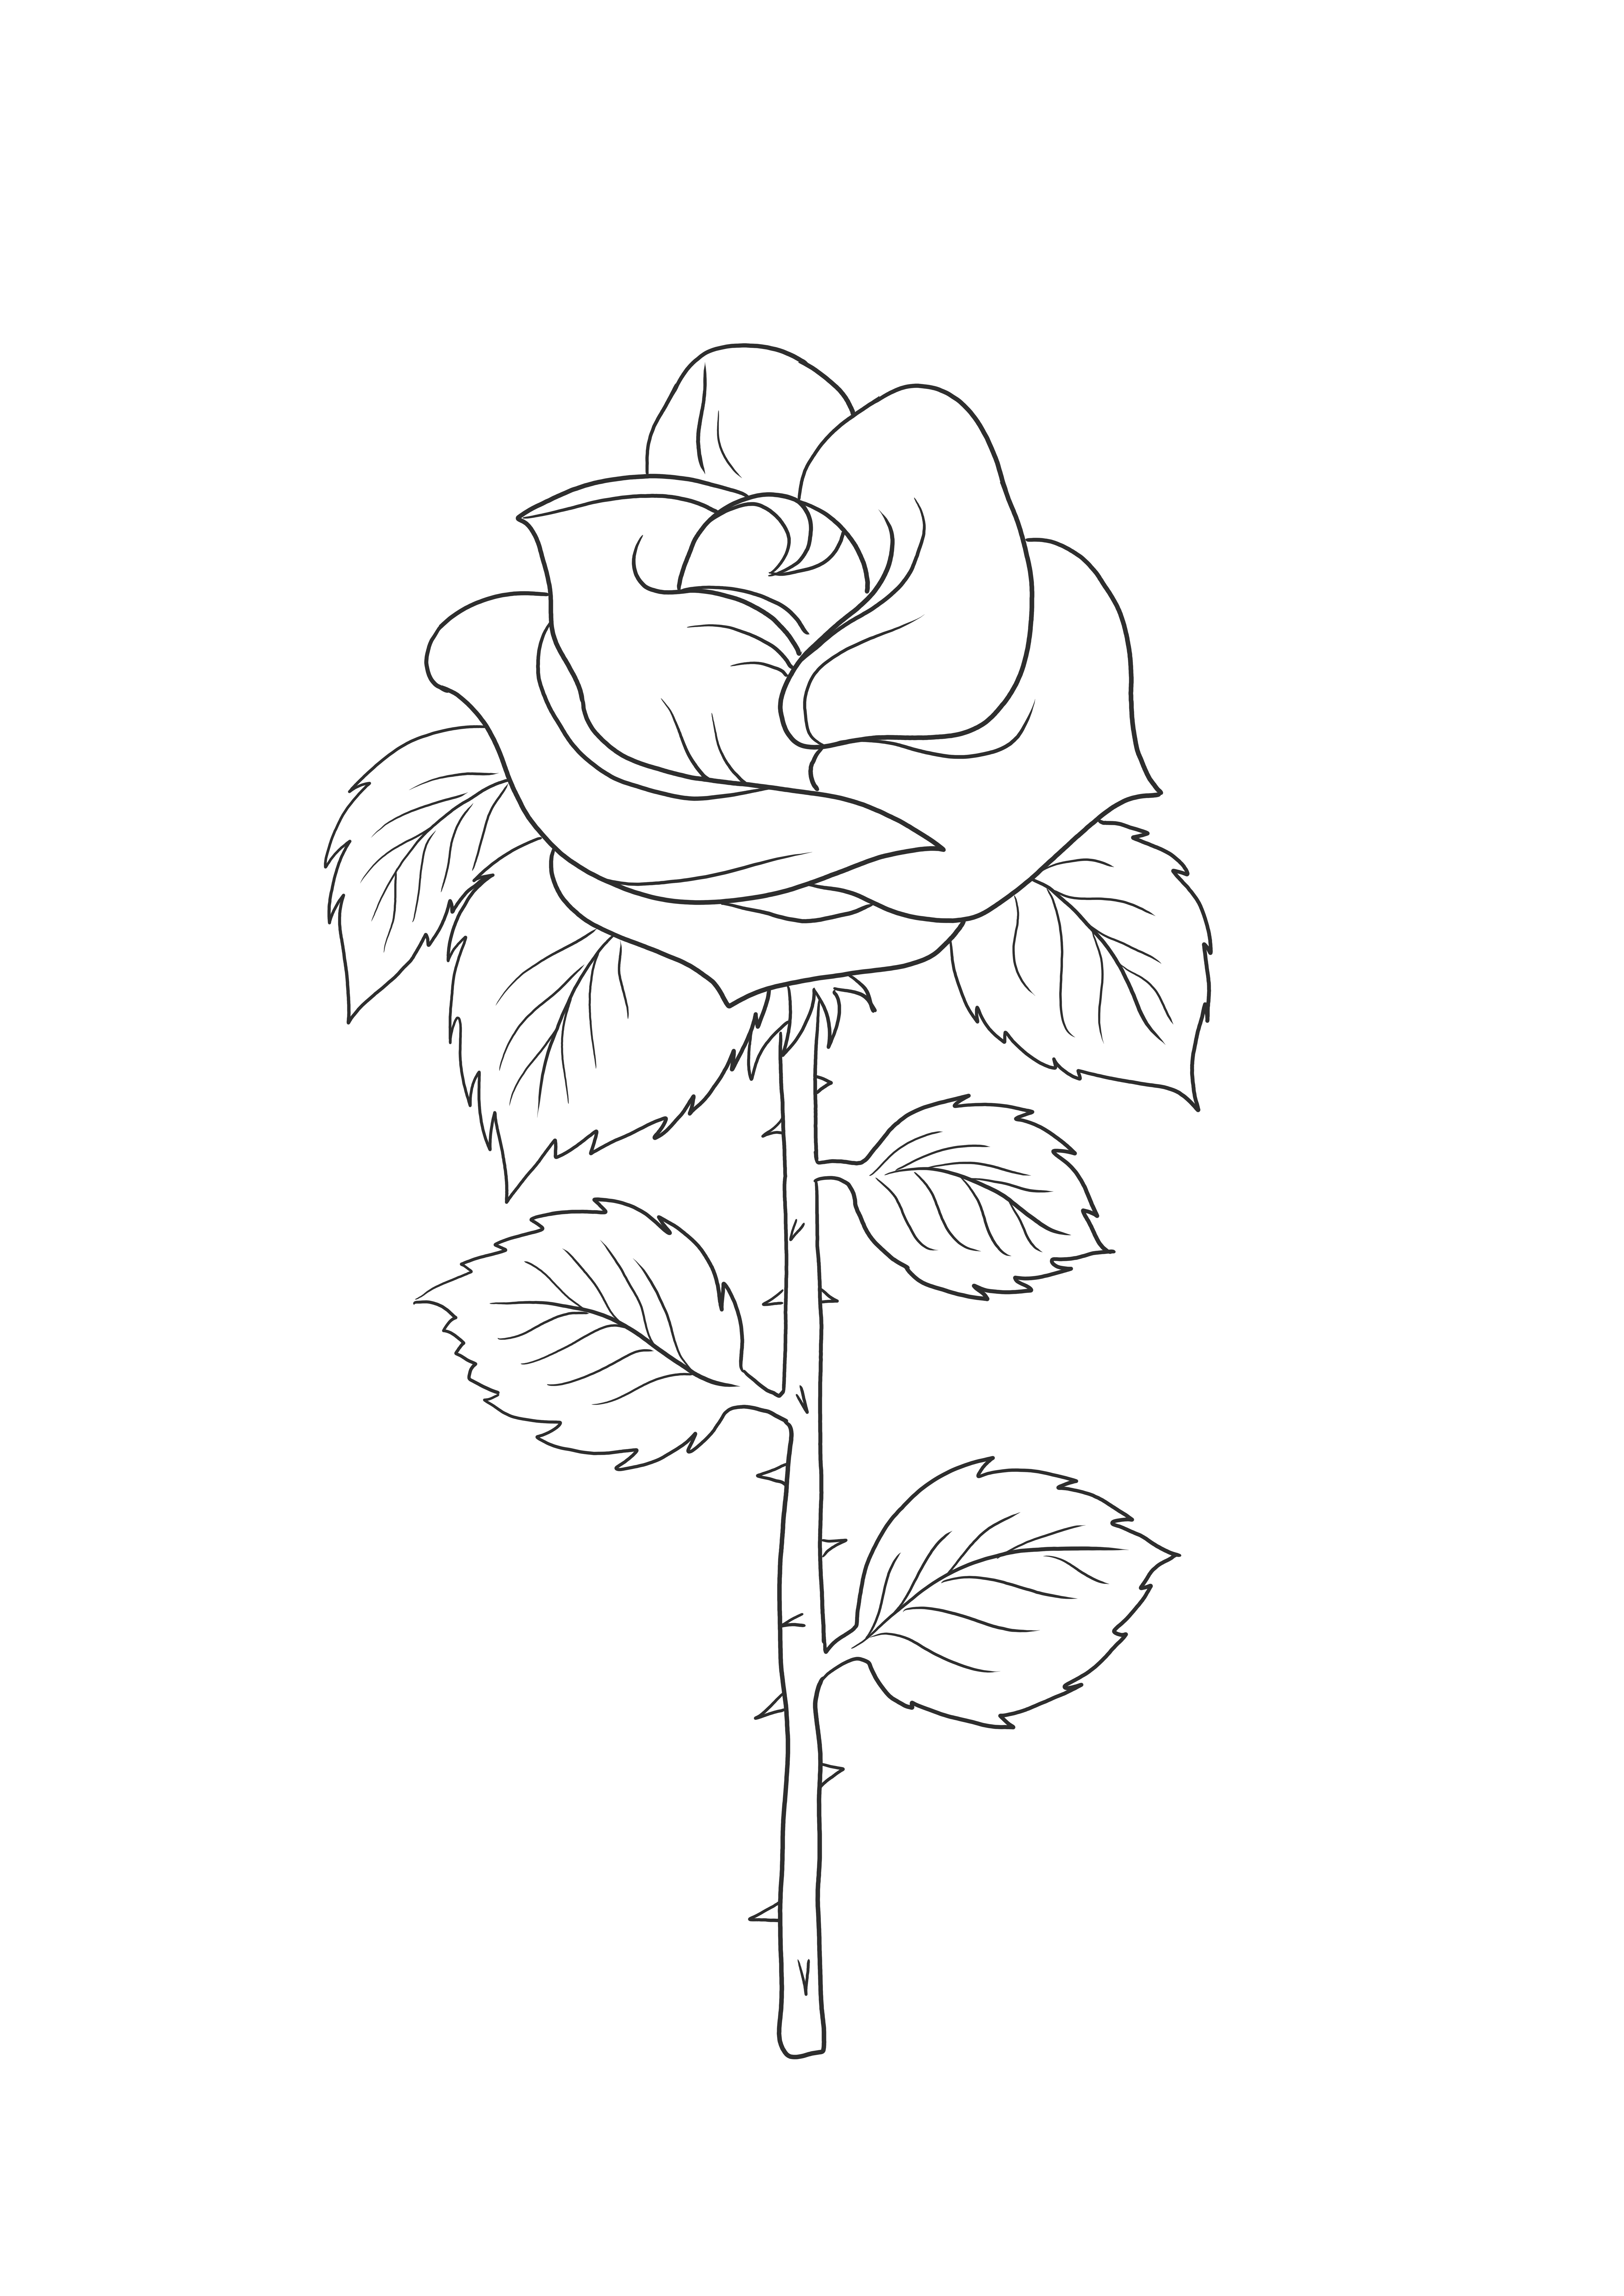 Värityskuva yksinkertaisesta ruusu-upea apuväline kasvien opettamiseen